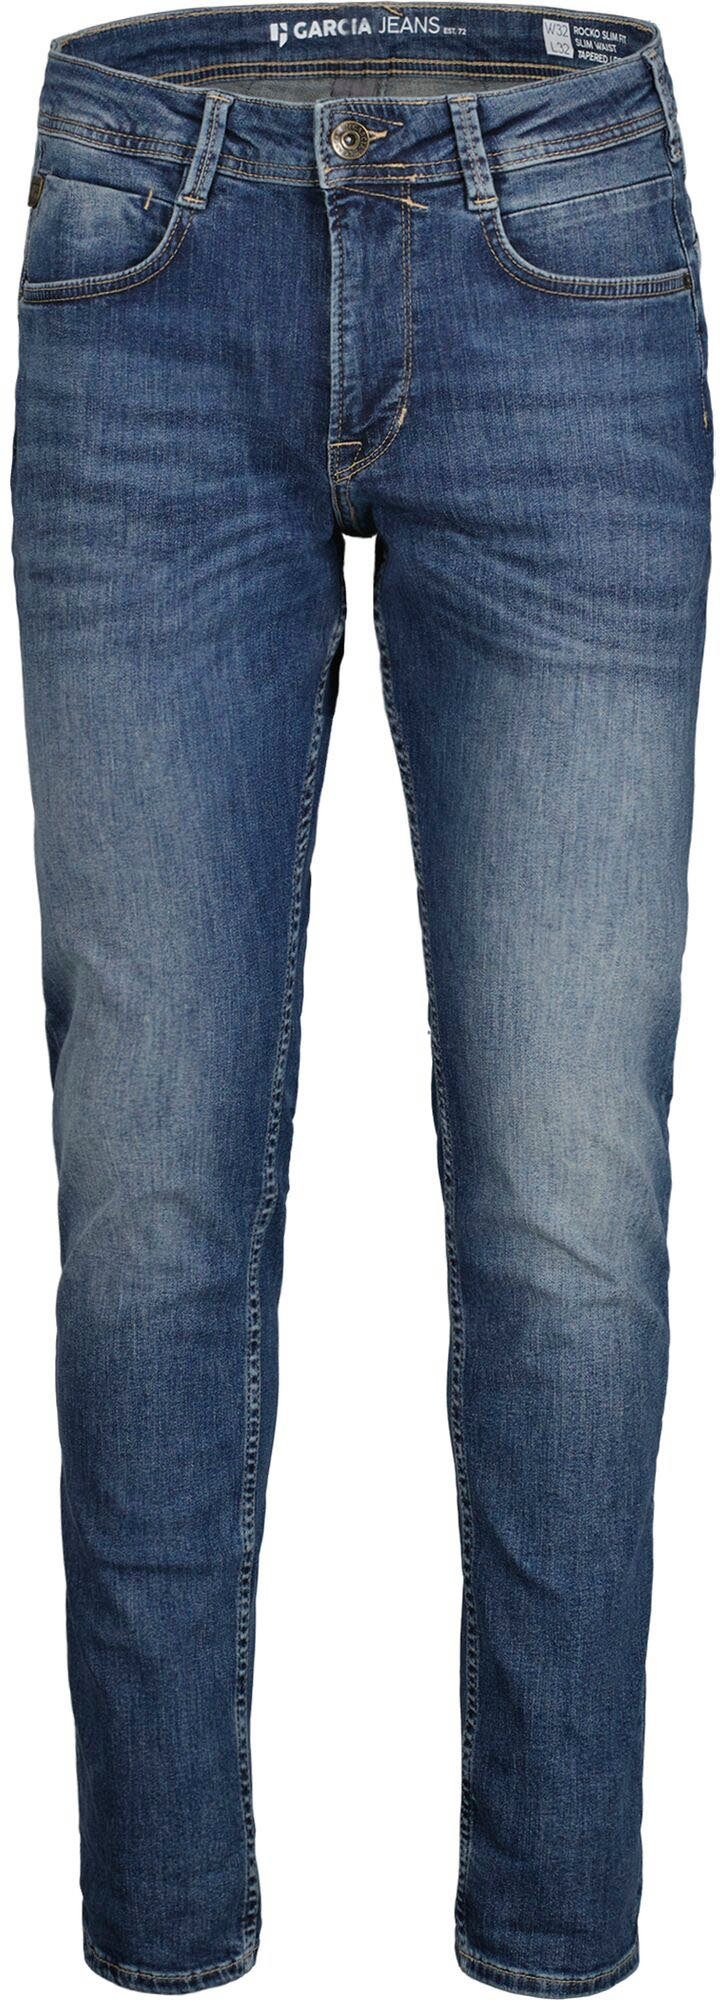 Garcia 5-Pocket-Jeans Rocko in medium Waschungen verschiedenen used